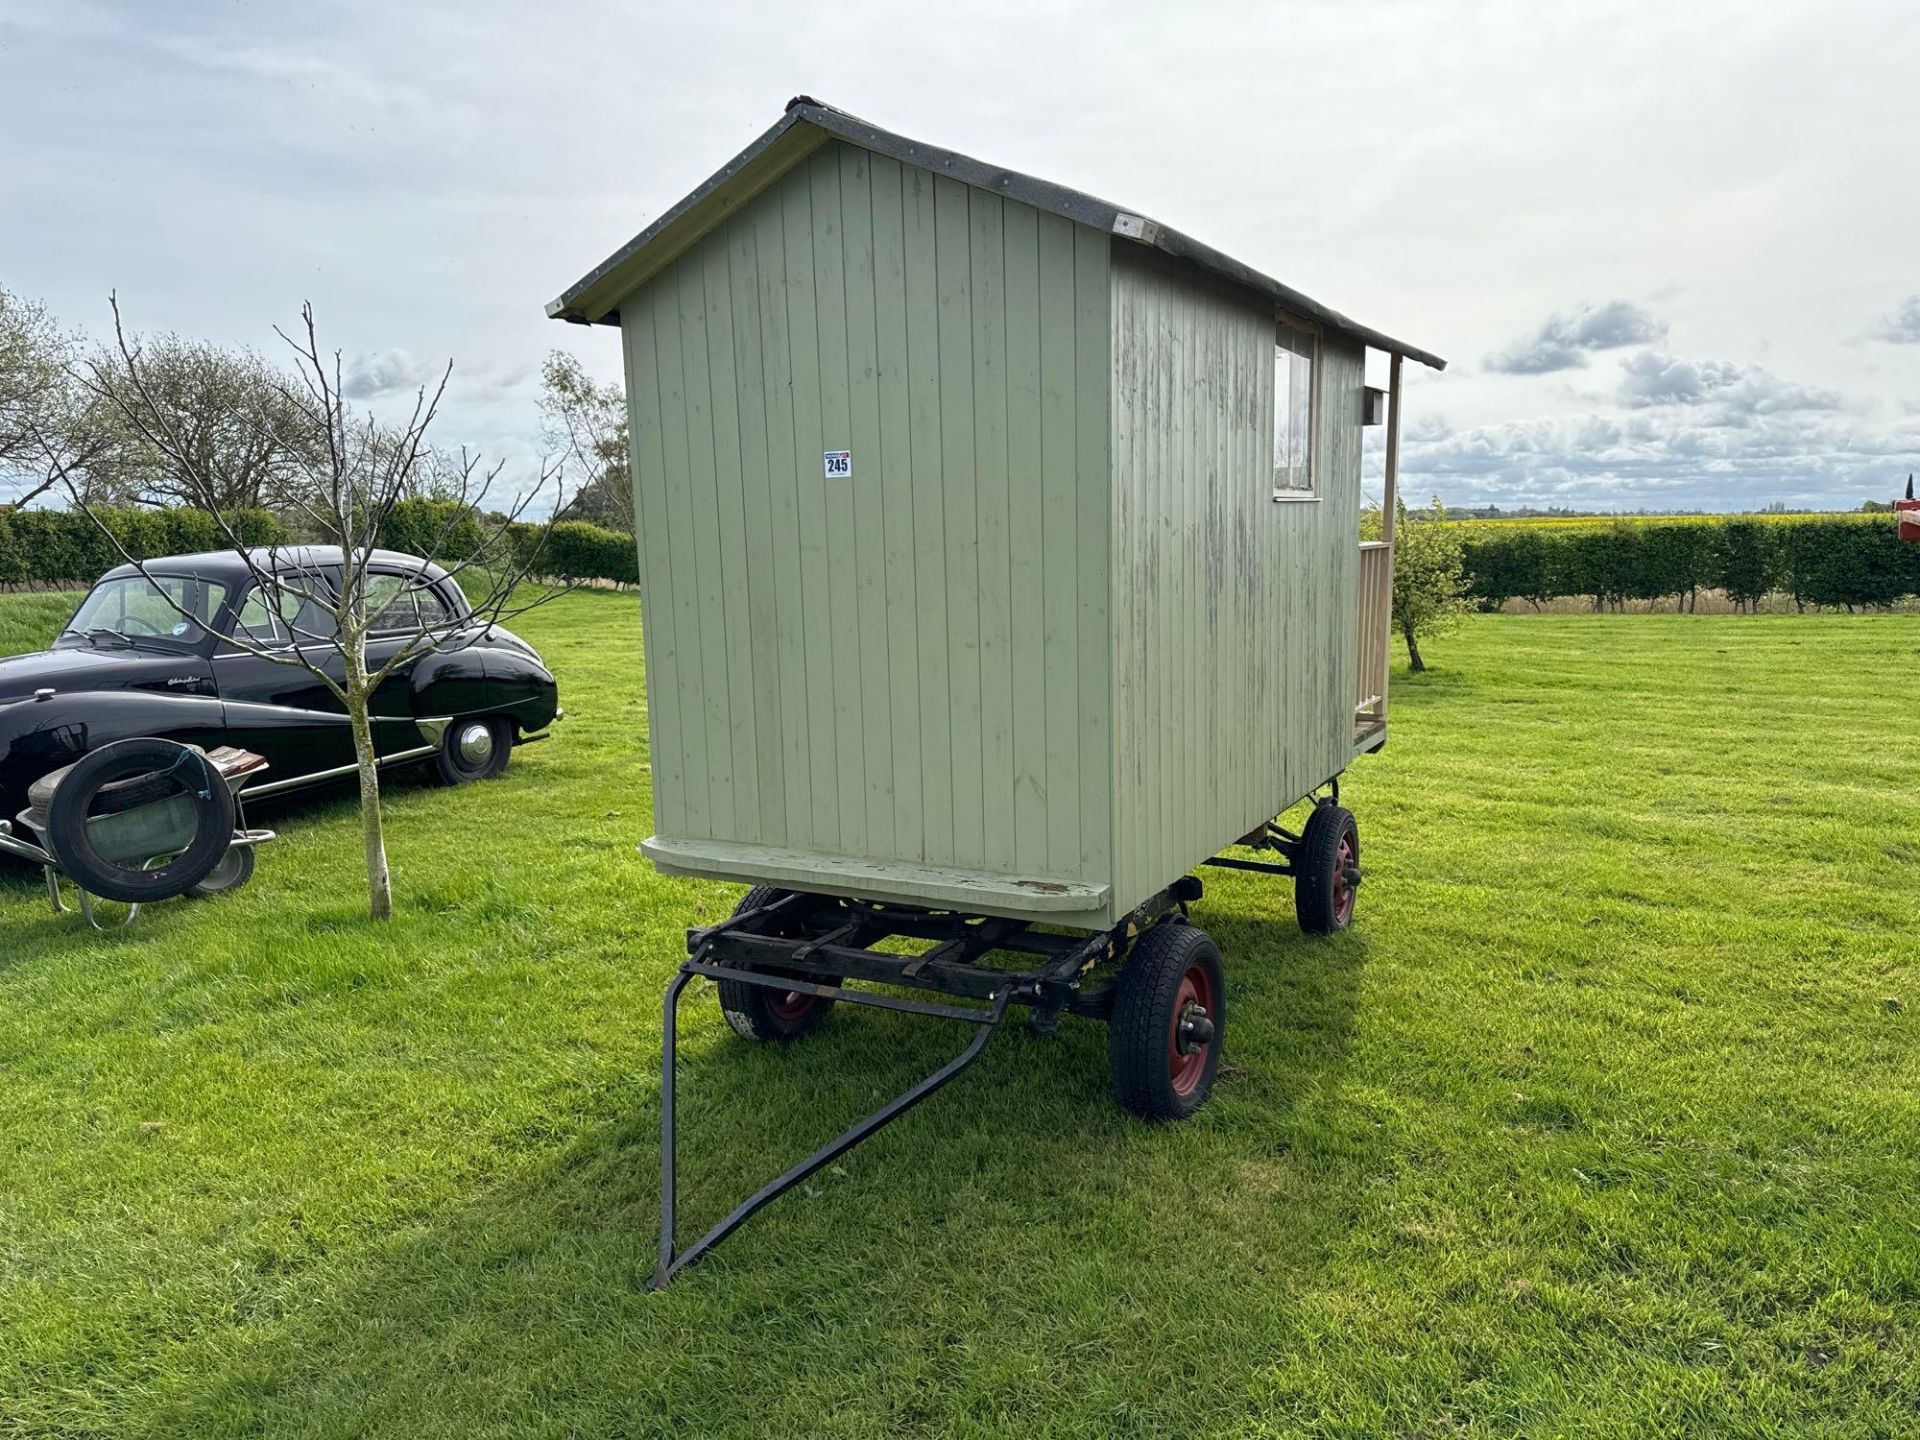 Shephards/garden wooden hut 10' x 4'6" on 4 wheel trailer